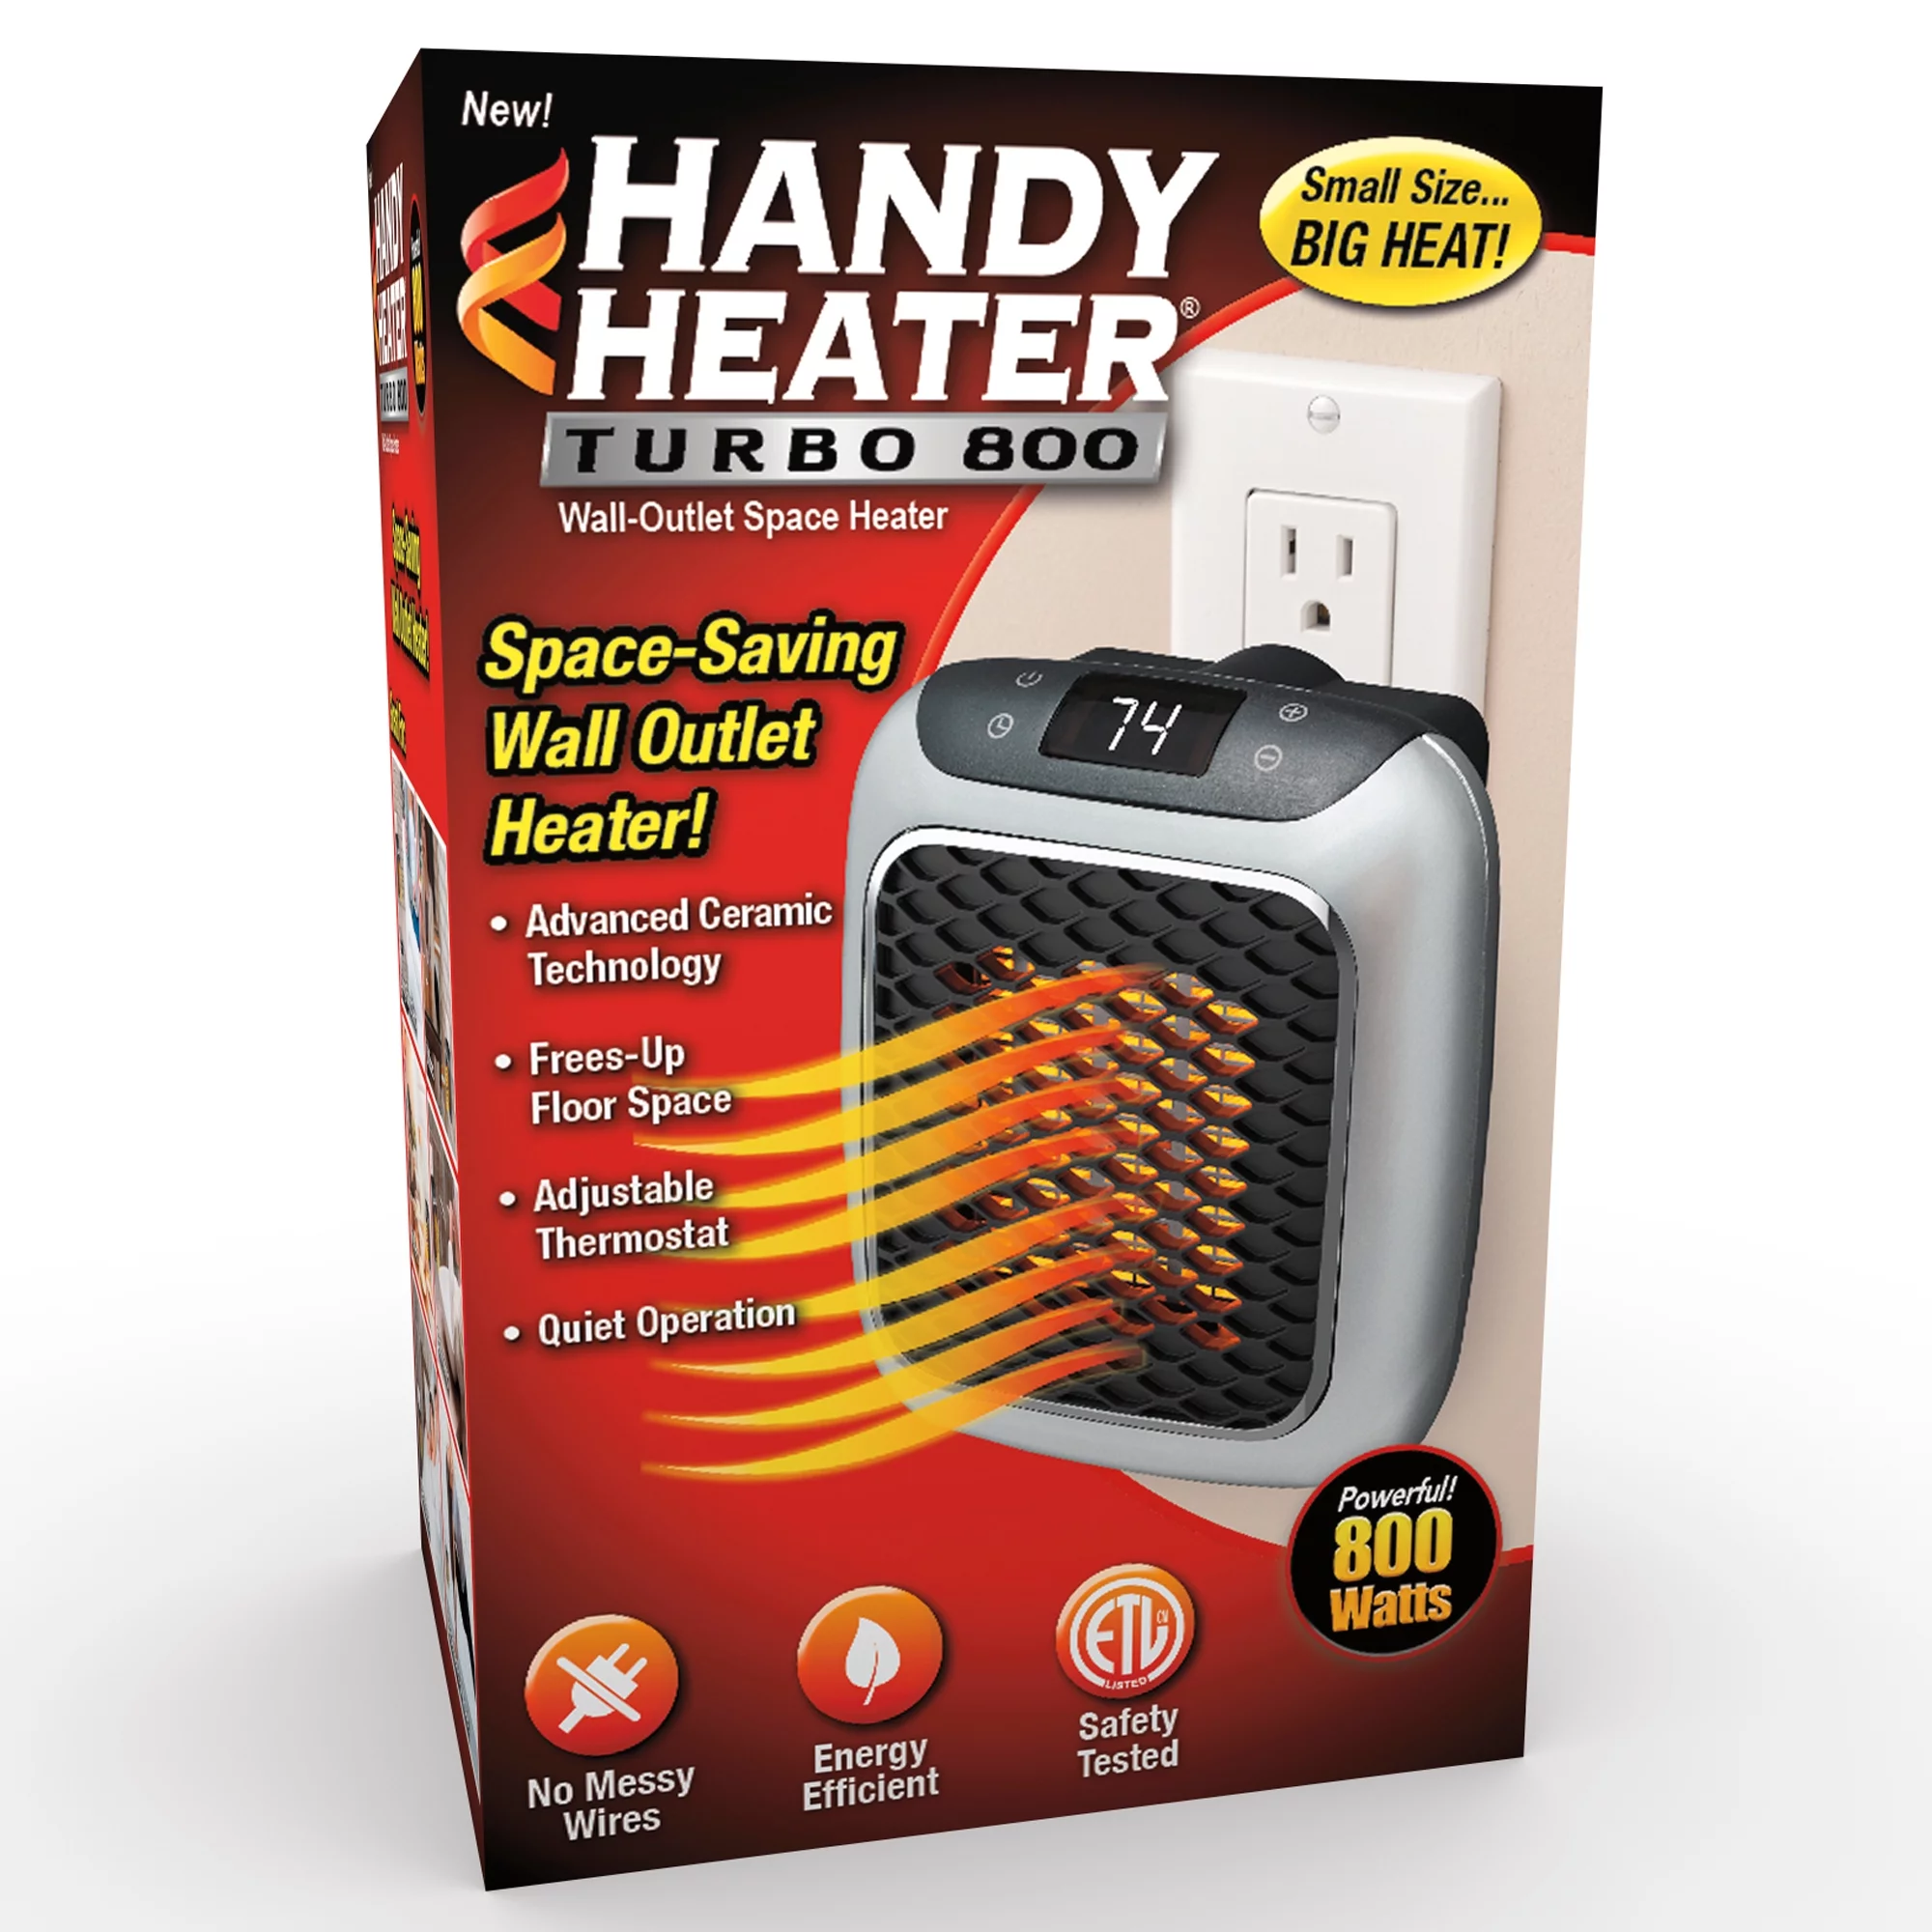 Handy Heater - na Allegro - na Ceneo - strona producenta - gdzie kupić - apteka